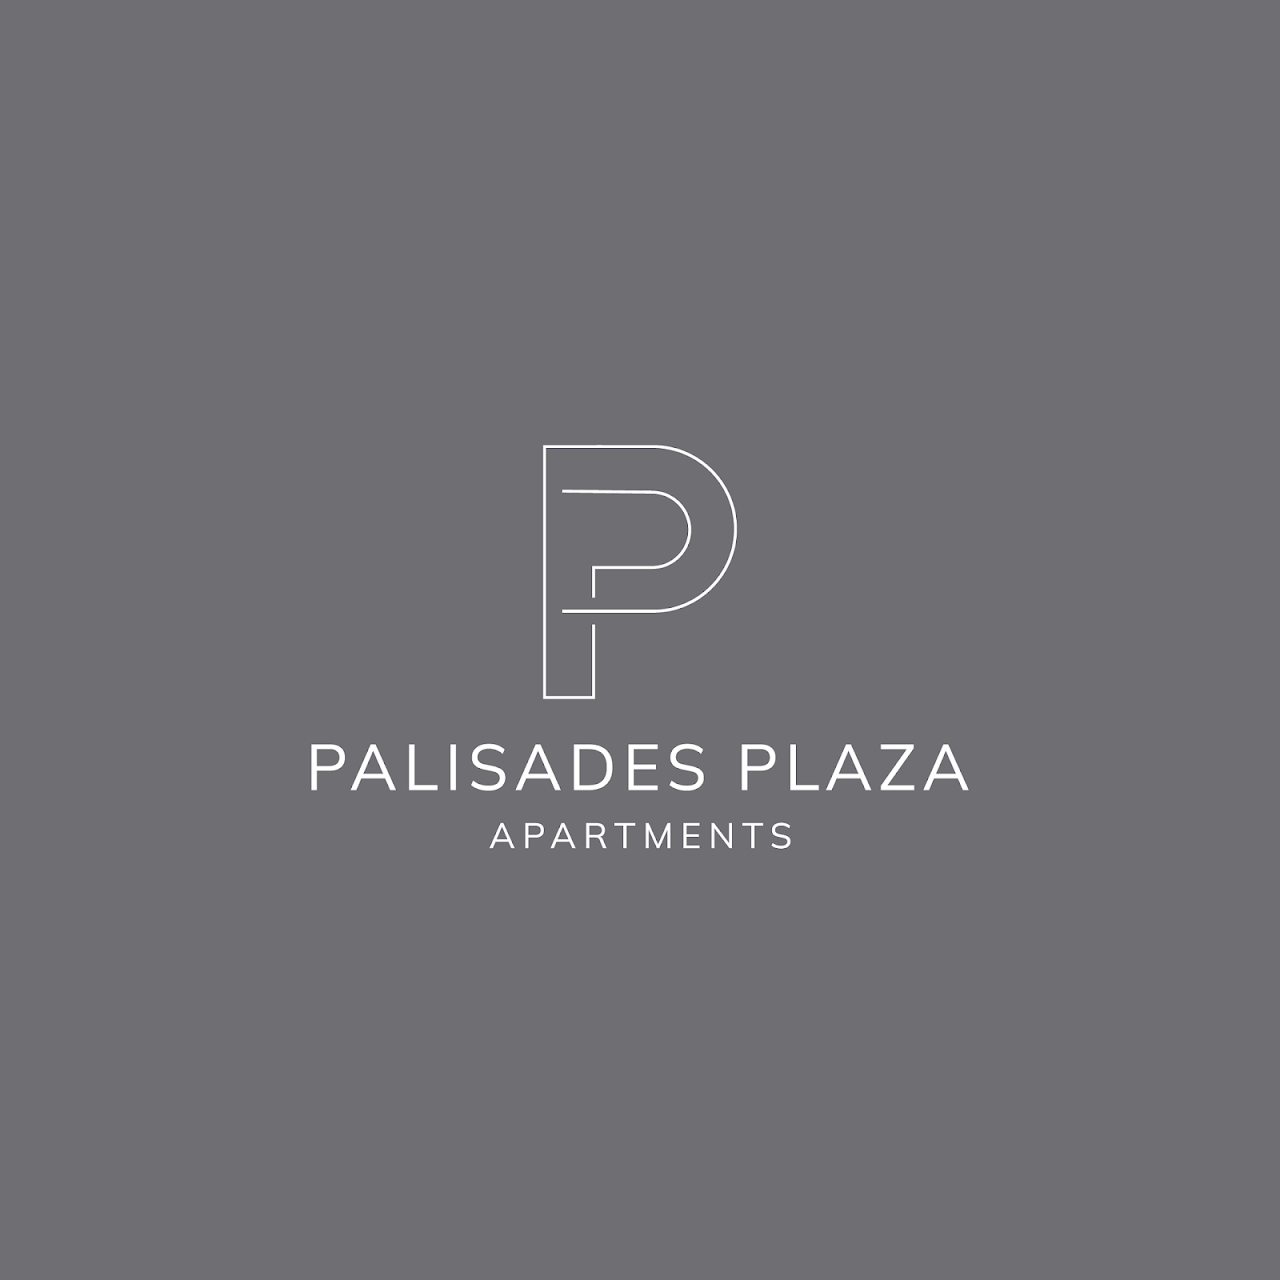 Photo of PALISADES PLAZA. Affordable housing located at 5 PALISADES PLZ RANKIN, PA 15104